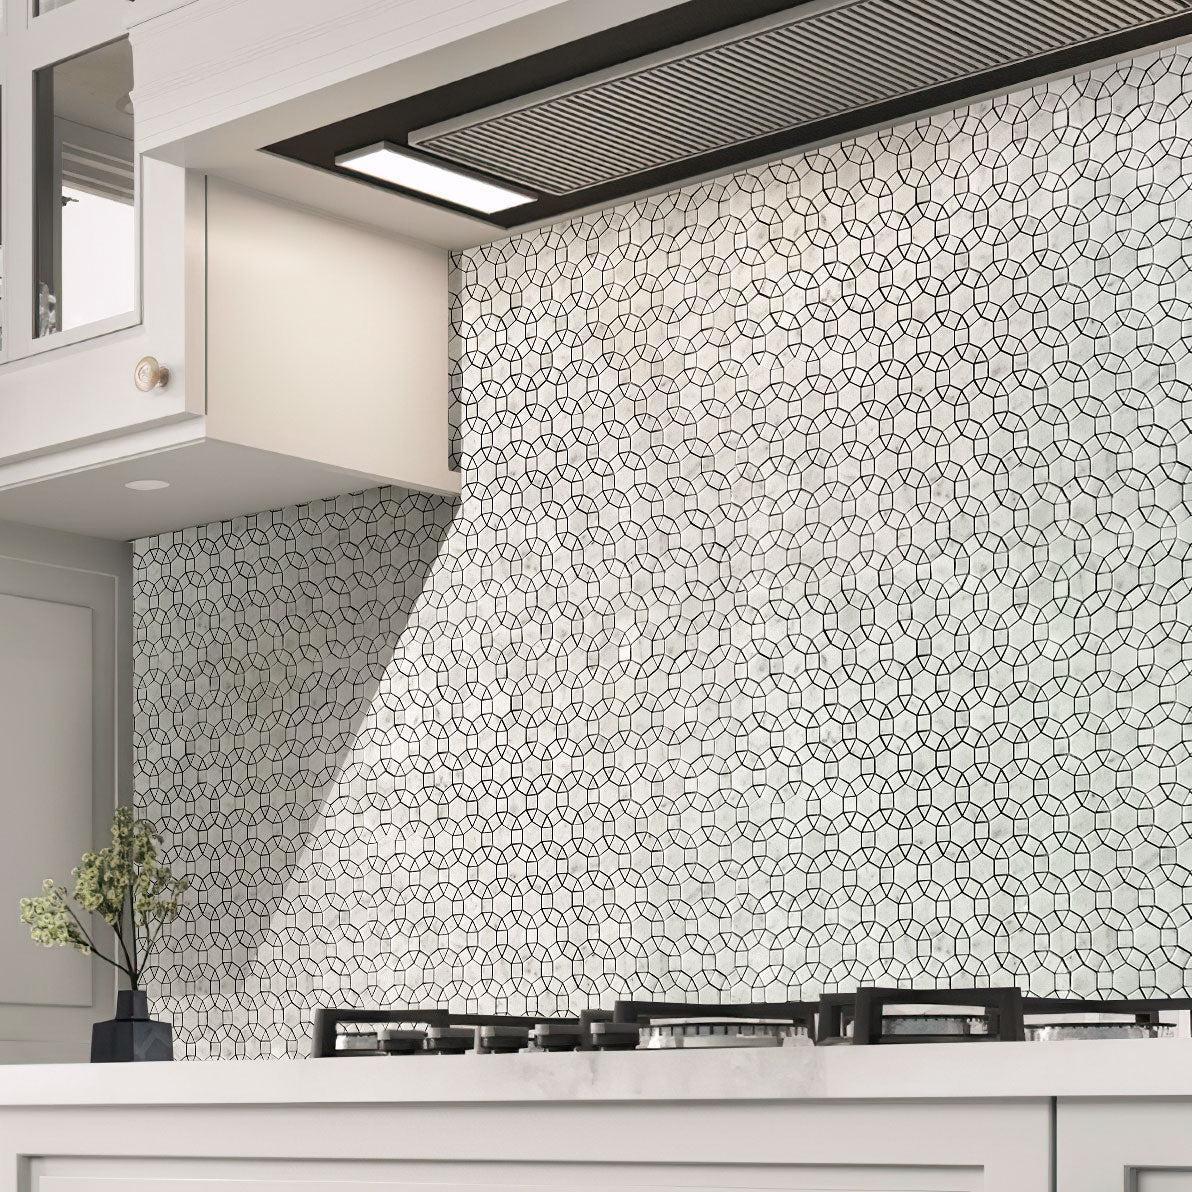 Interlocking circle Carrara marble kitchen wall tile behind the stove